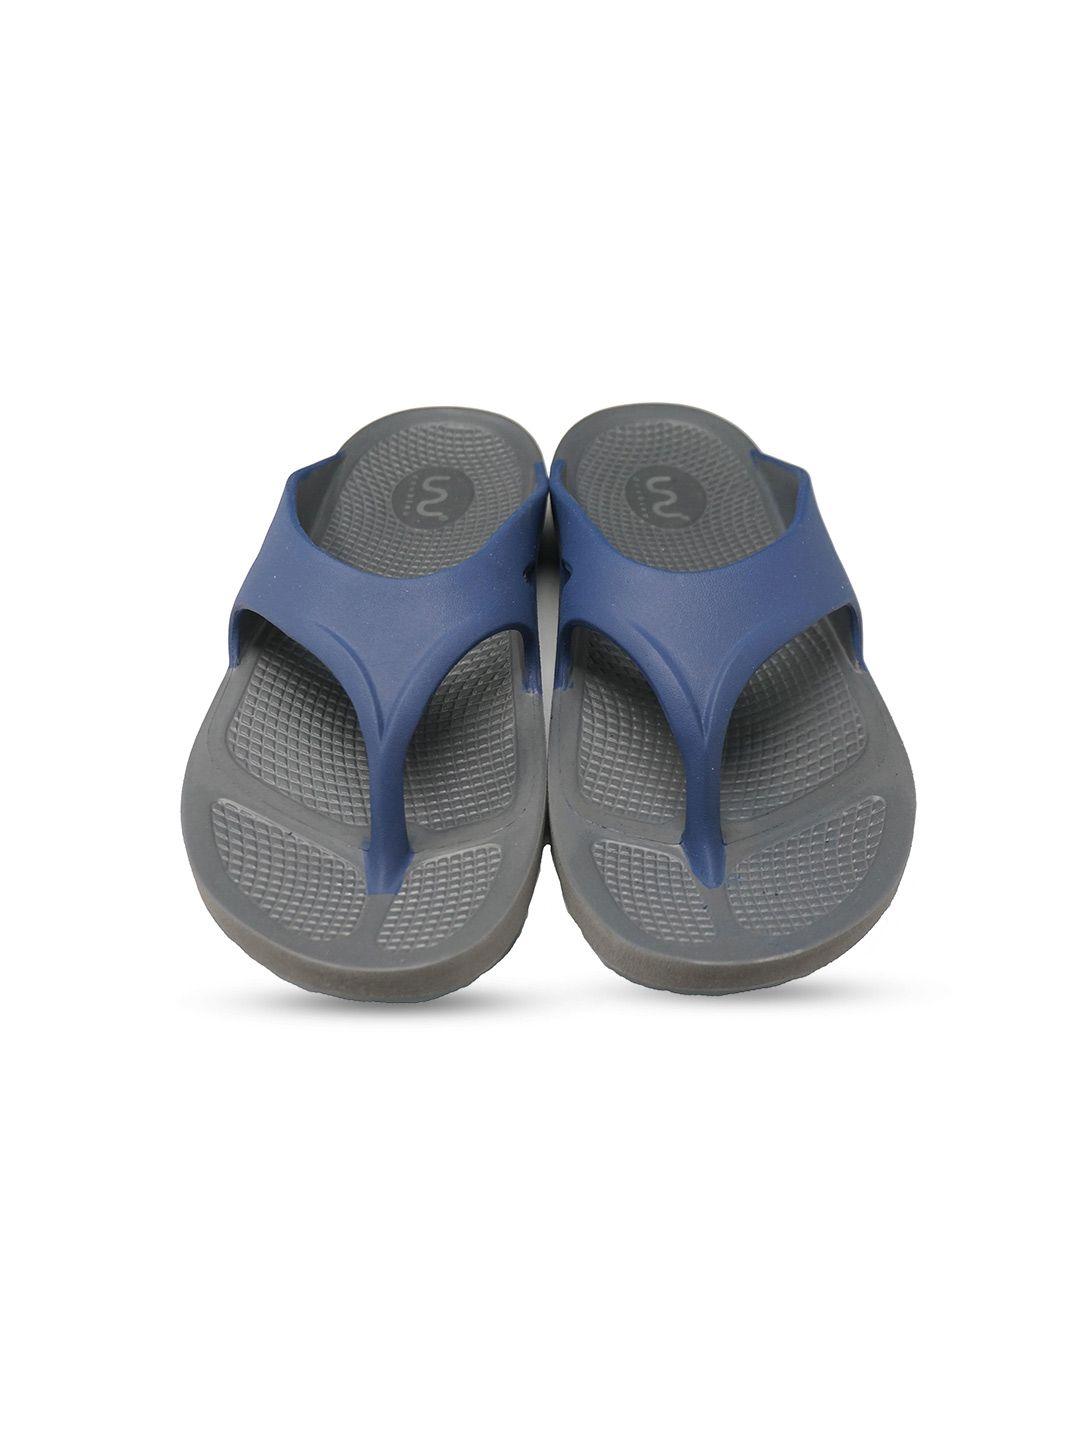 doubleu men grey & navy blue rubber thong flip-flops